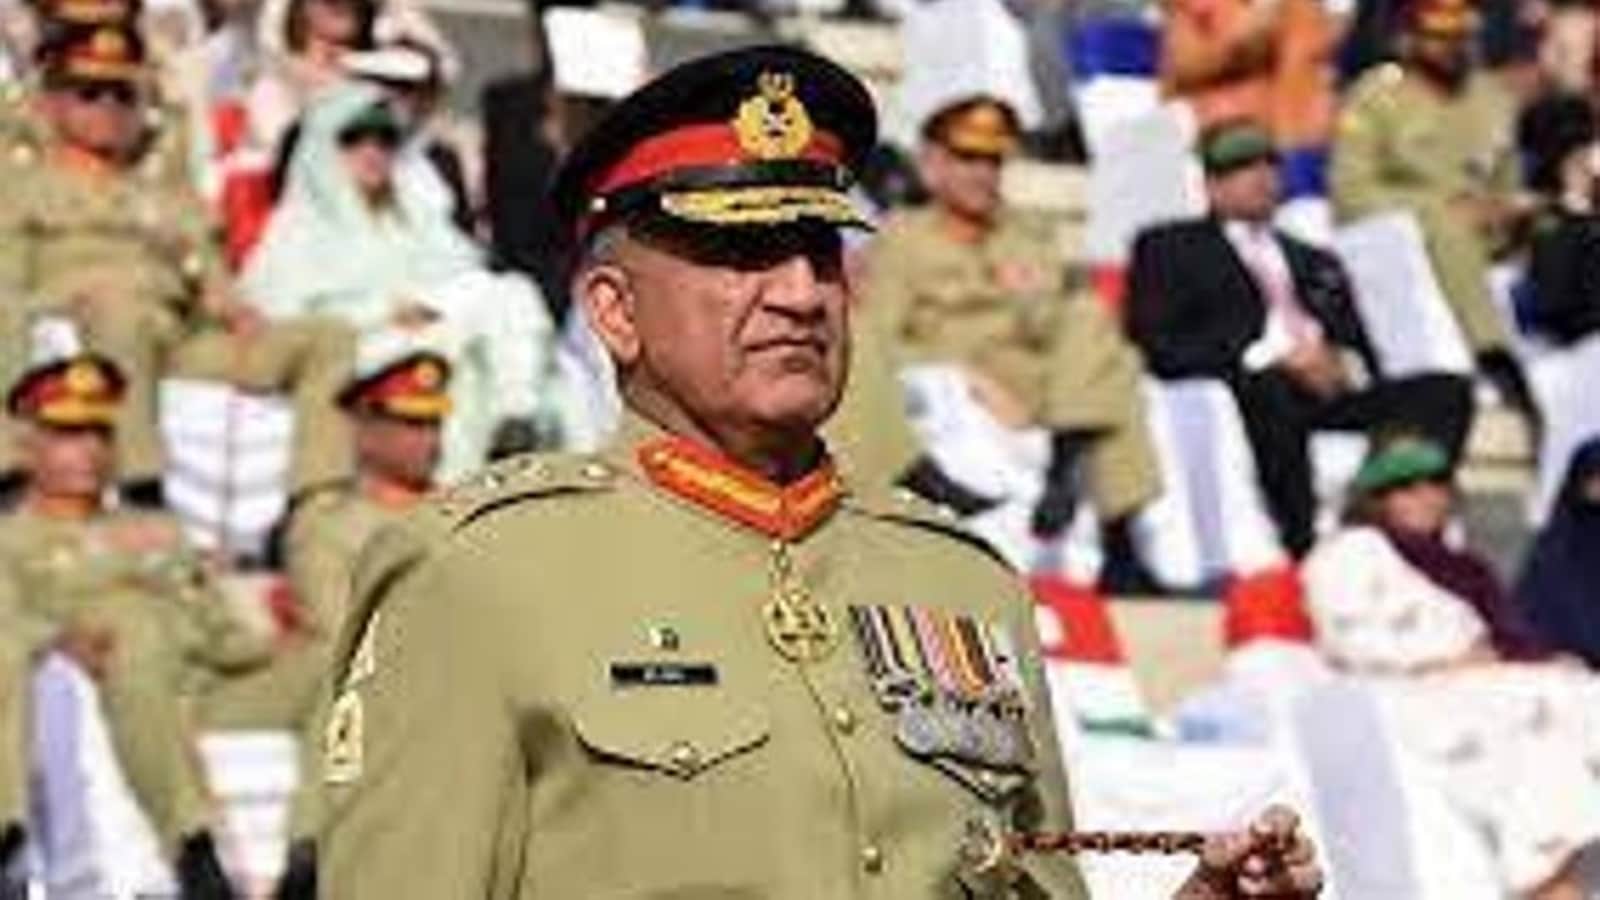 ¿Bajwa buscará una extensión al final de su mandato?  Ejército de Pakistán responde: Informe |  Noticias del mundo